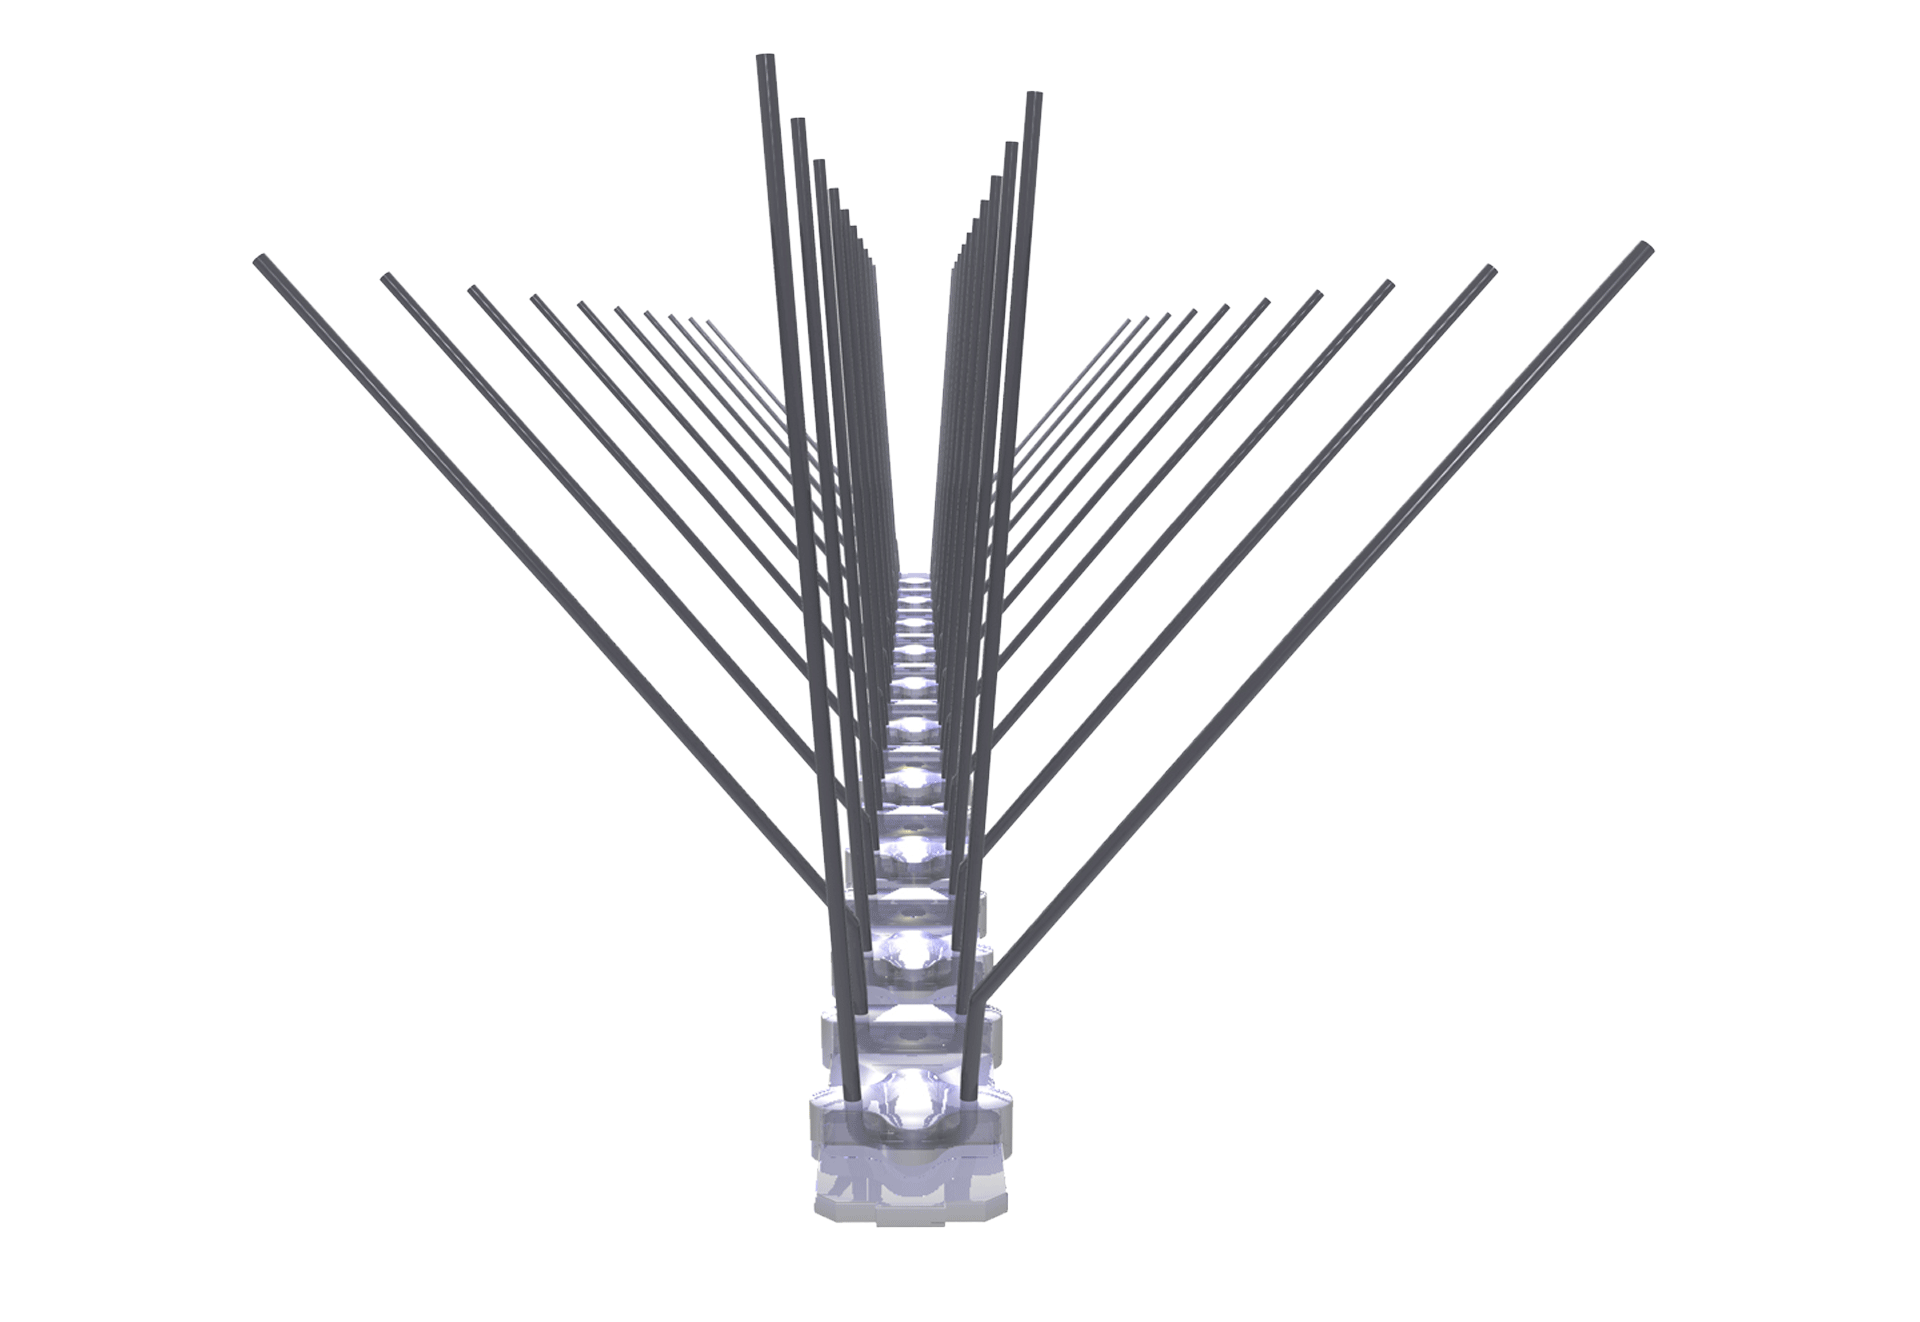 4 reihige Taubenabwehr-Spikes 50 cm lang aus Edelstahl und Polycarbonat